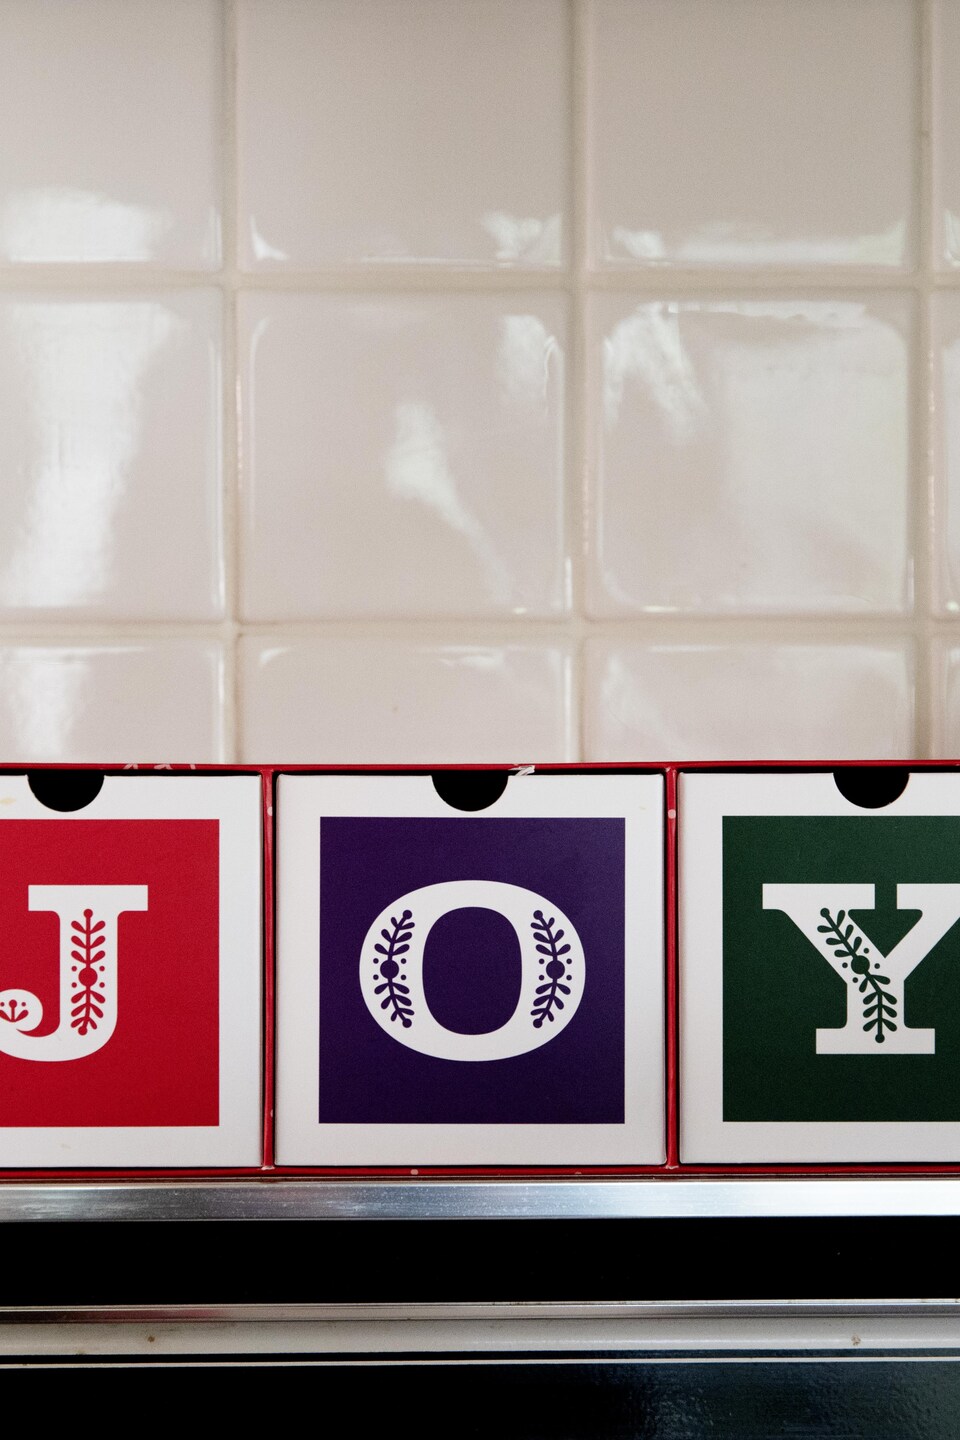 Les lettres J, O, Y dans une cuisine.